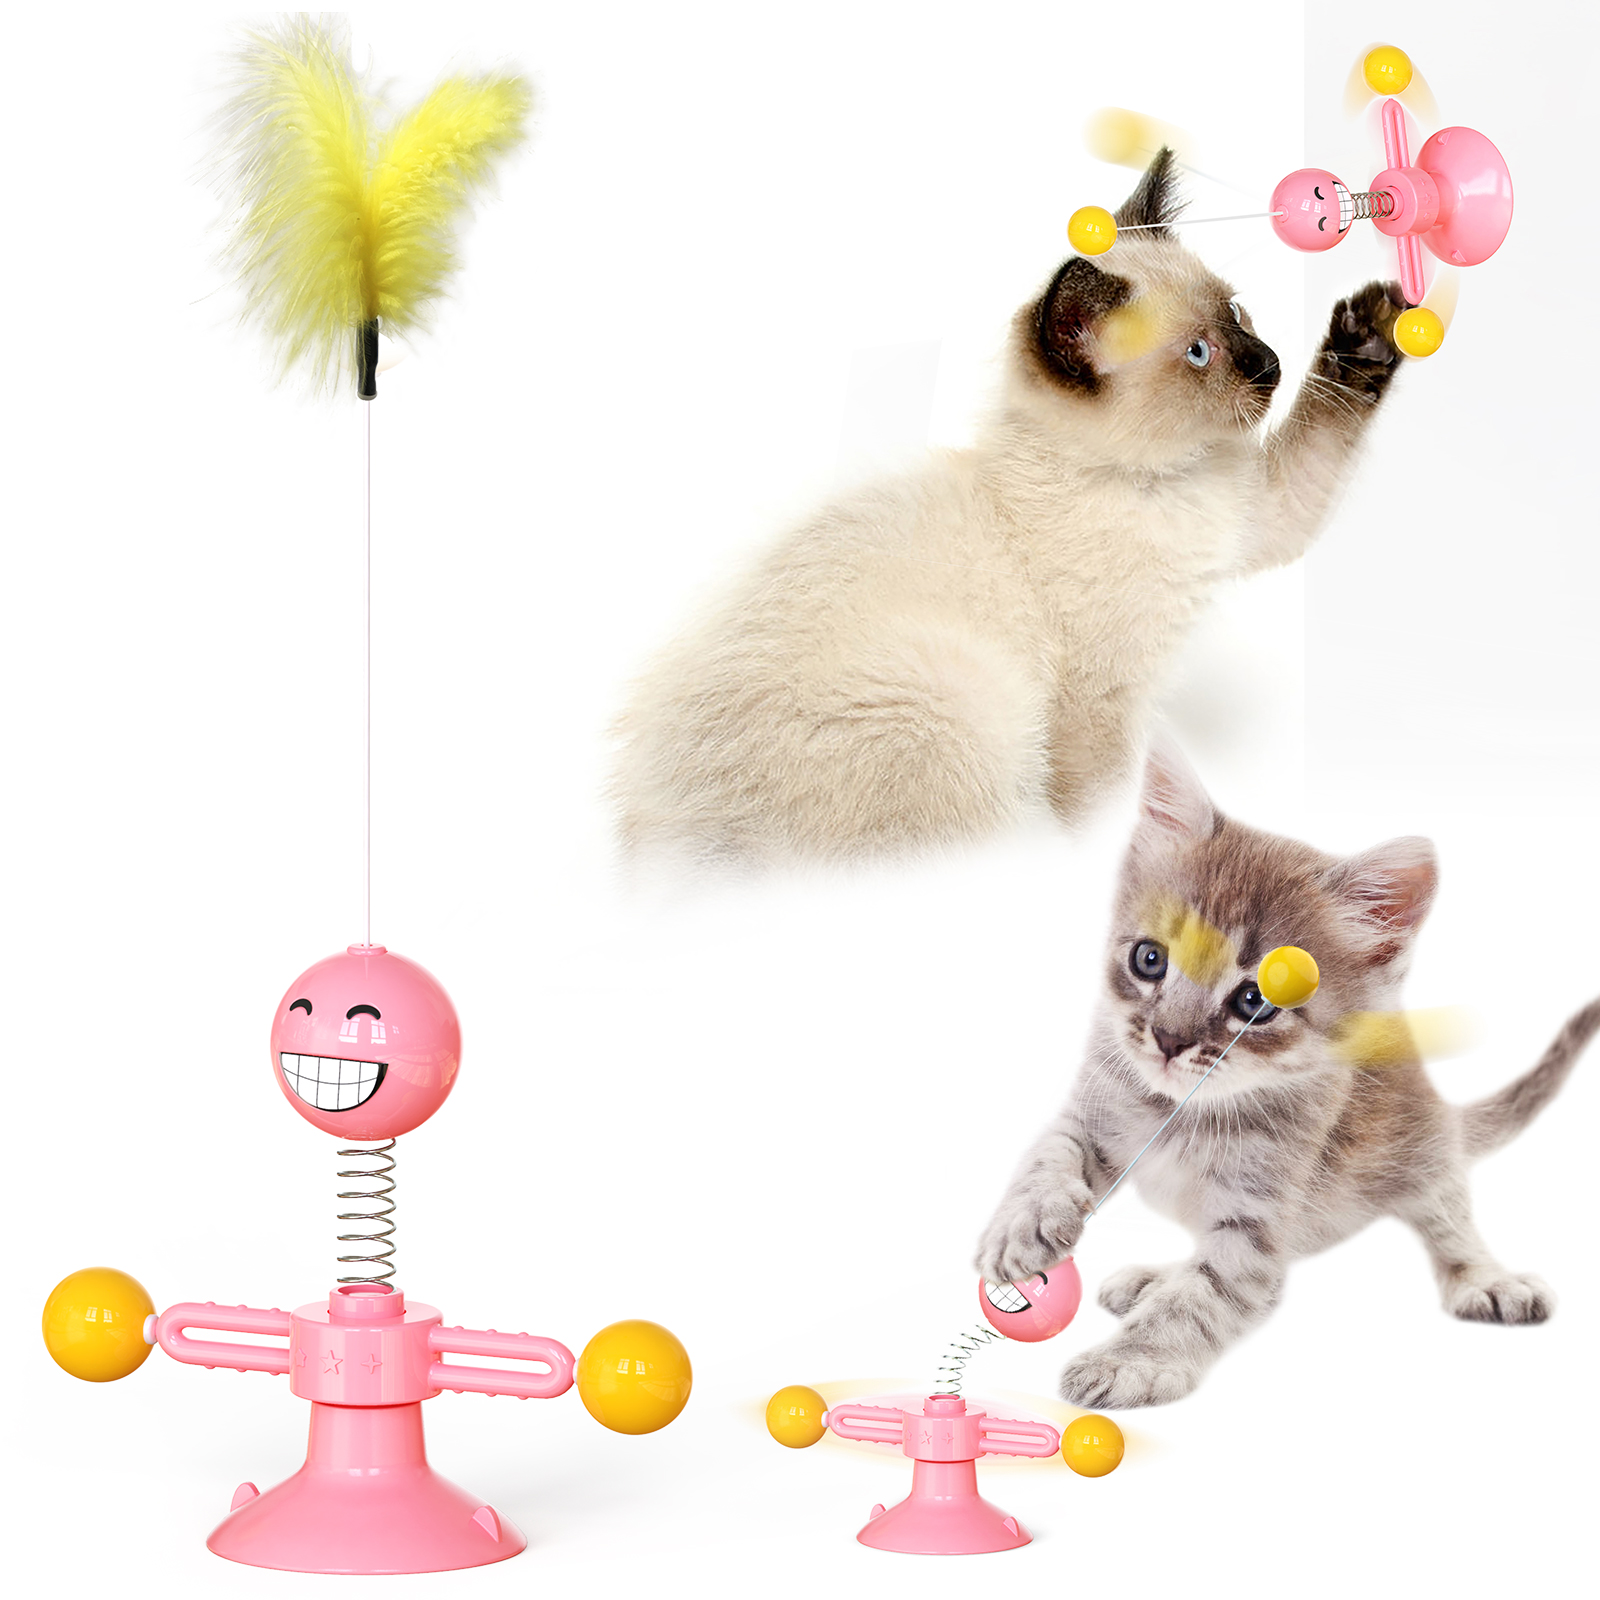 Горячая продажа забавных кошек Артефакт Весна Человеческая кошка Игрушка Пернатая кошка Игрушка